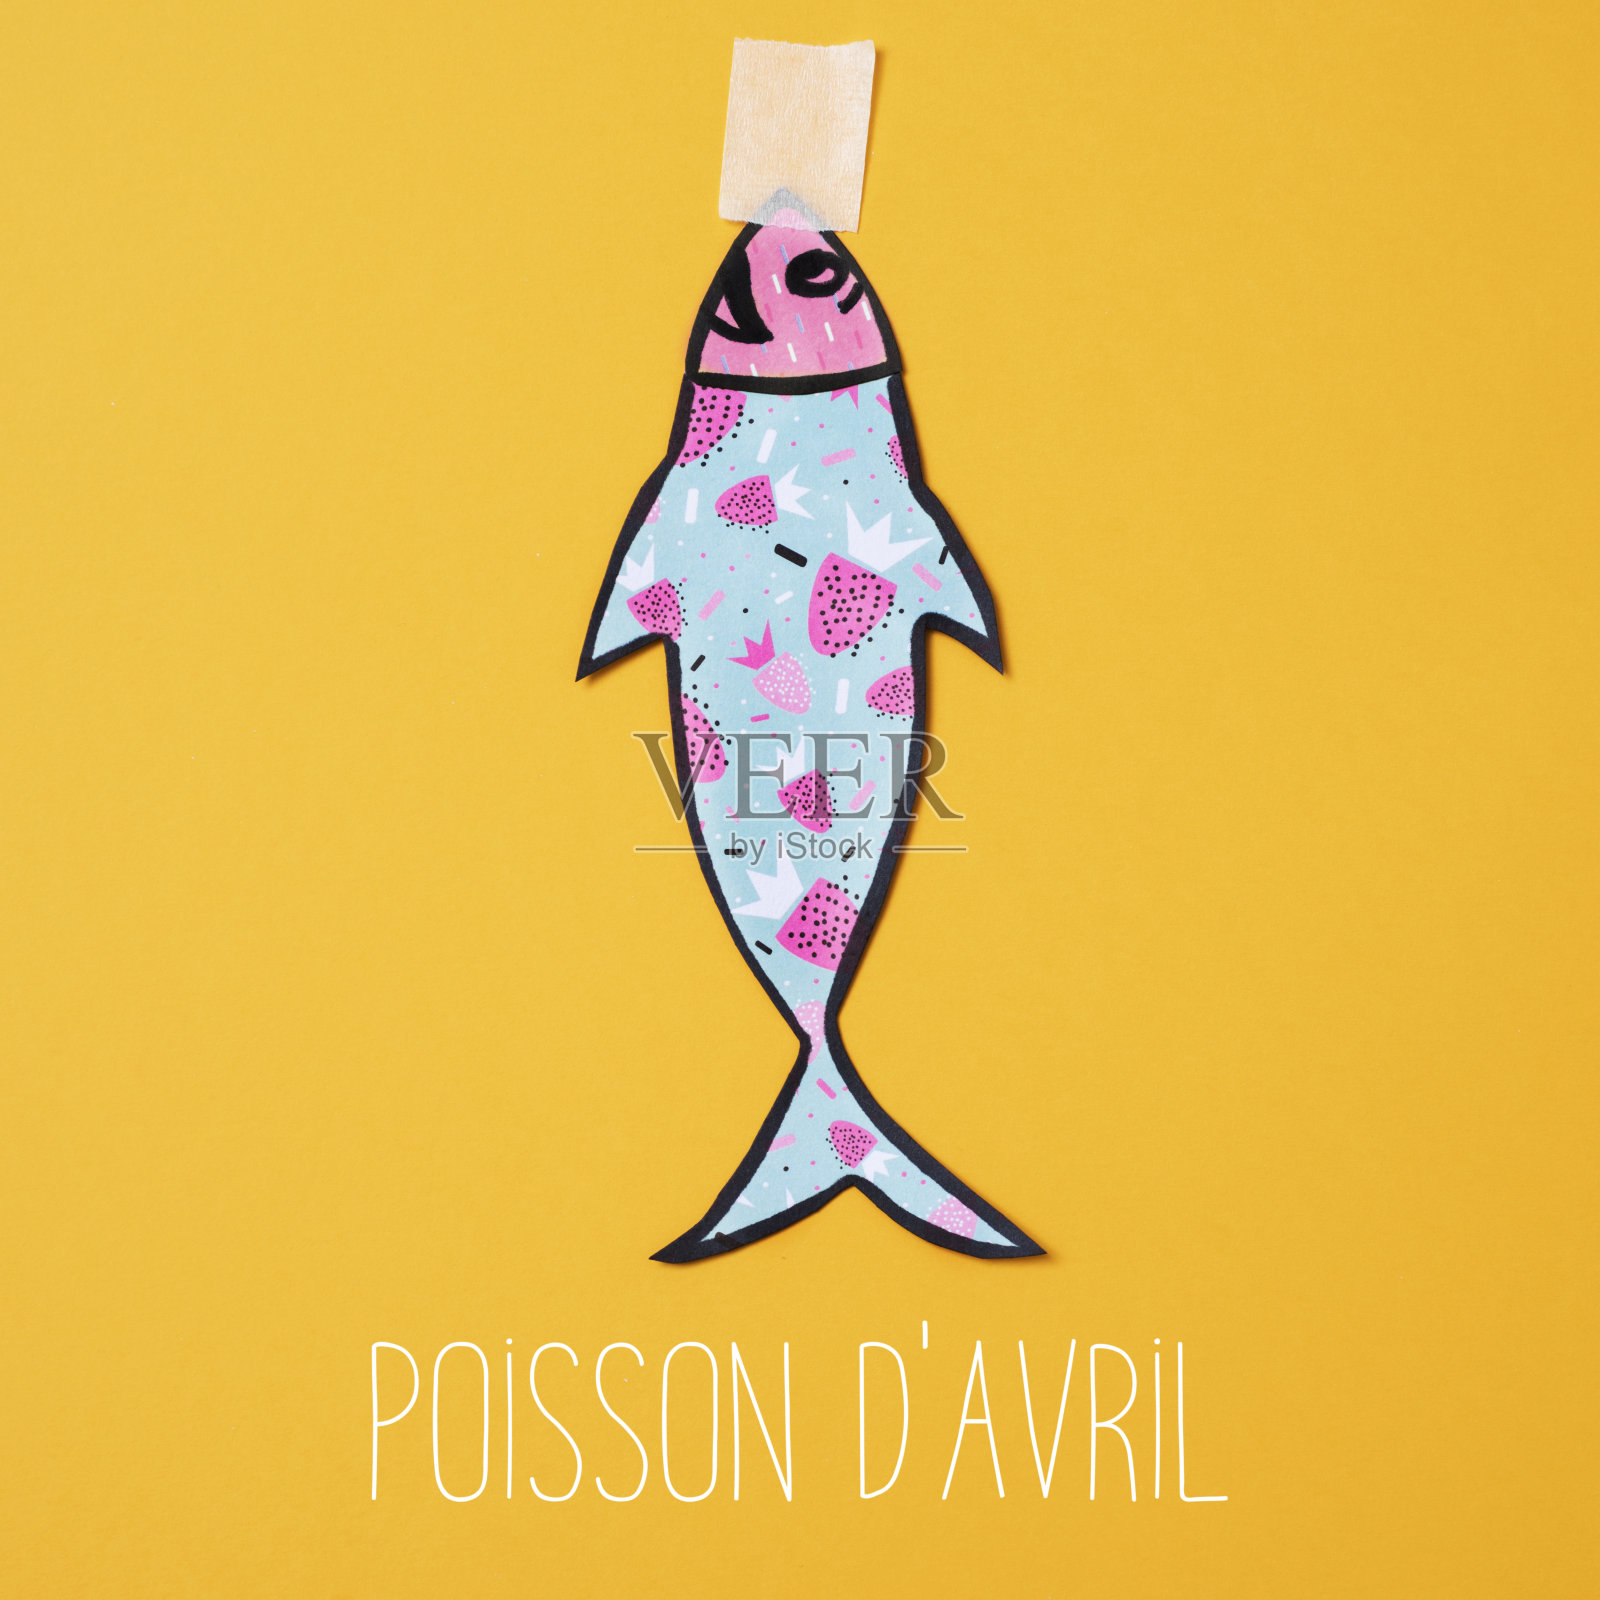 法语叫poisson d avril，愚人节插画图片素材